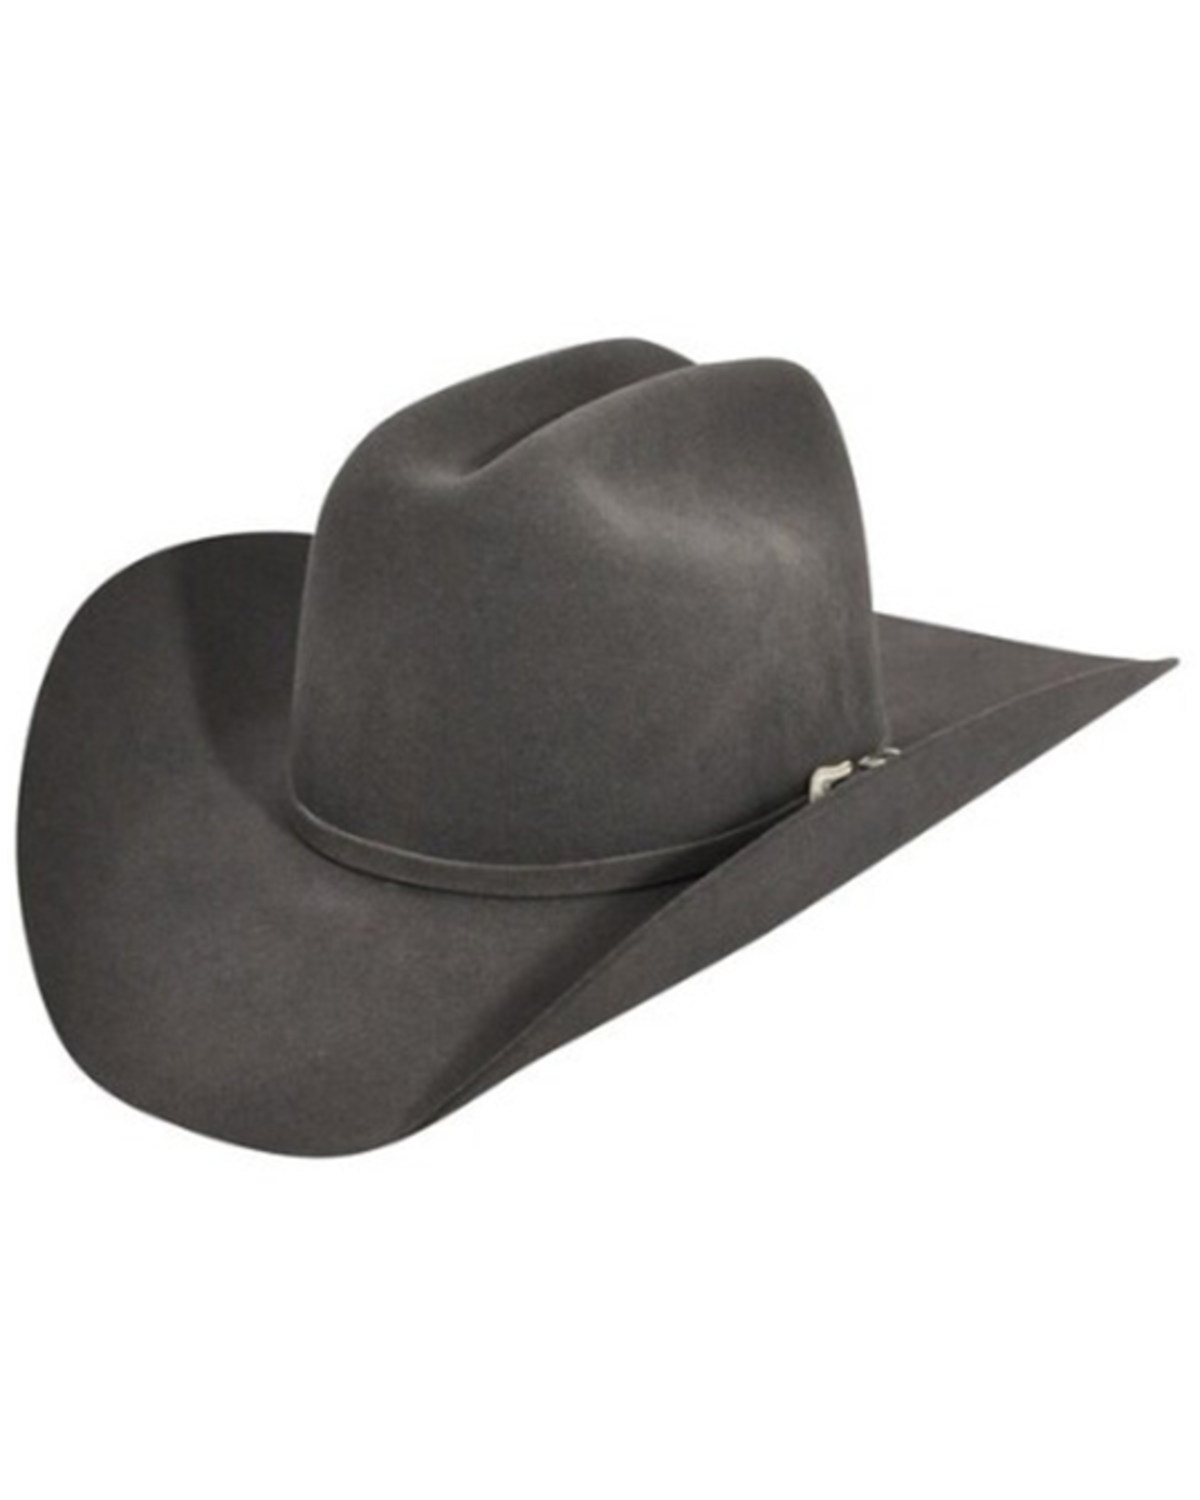 Bailey Western Lightning 4X Felt Cowboy Hat